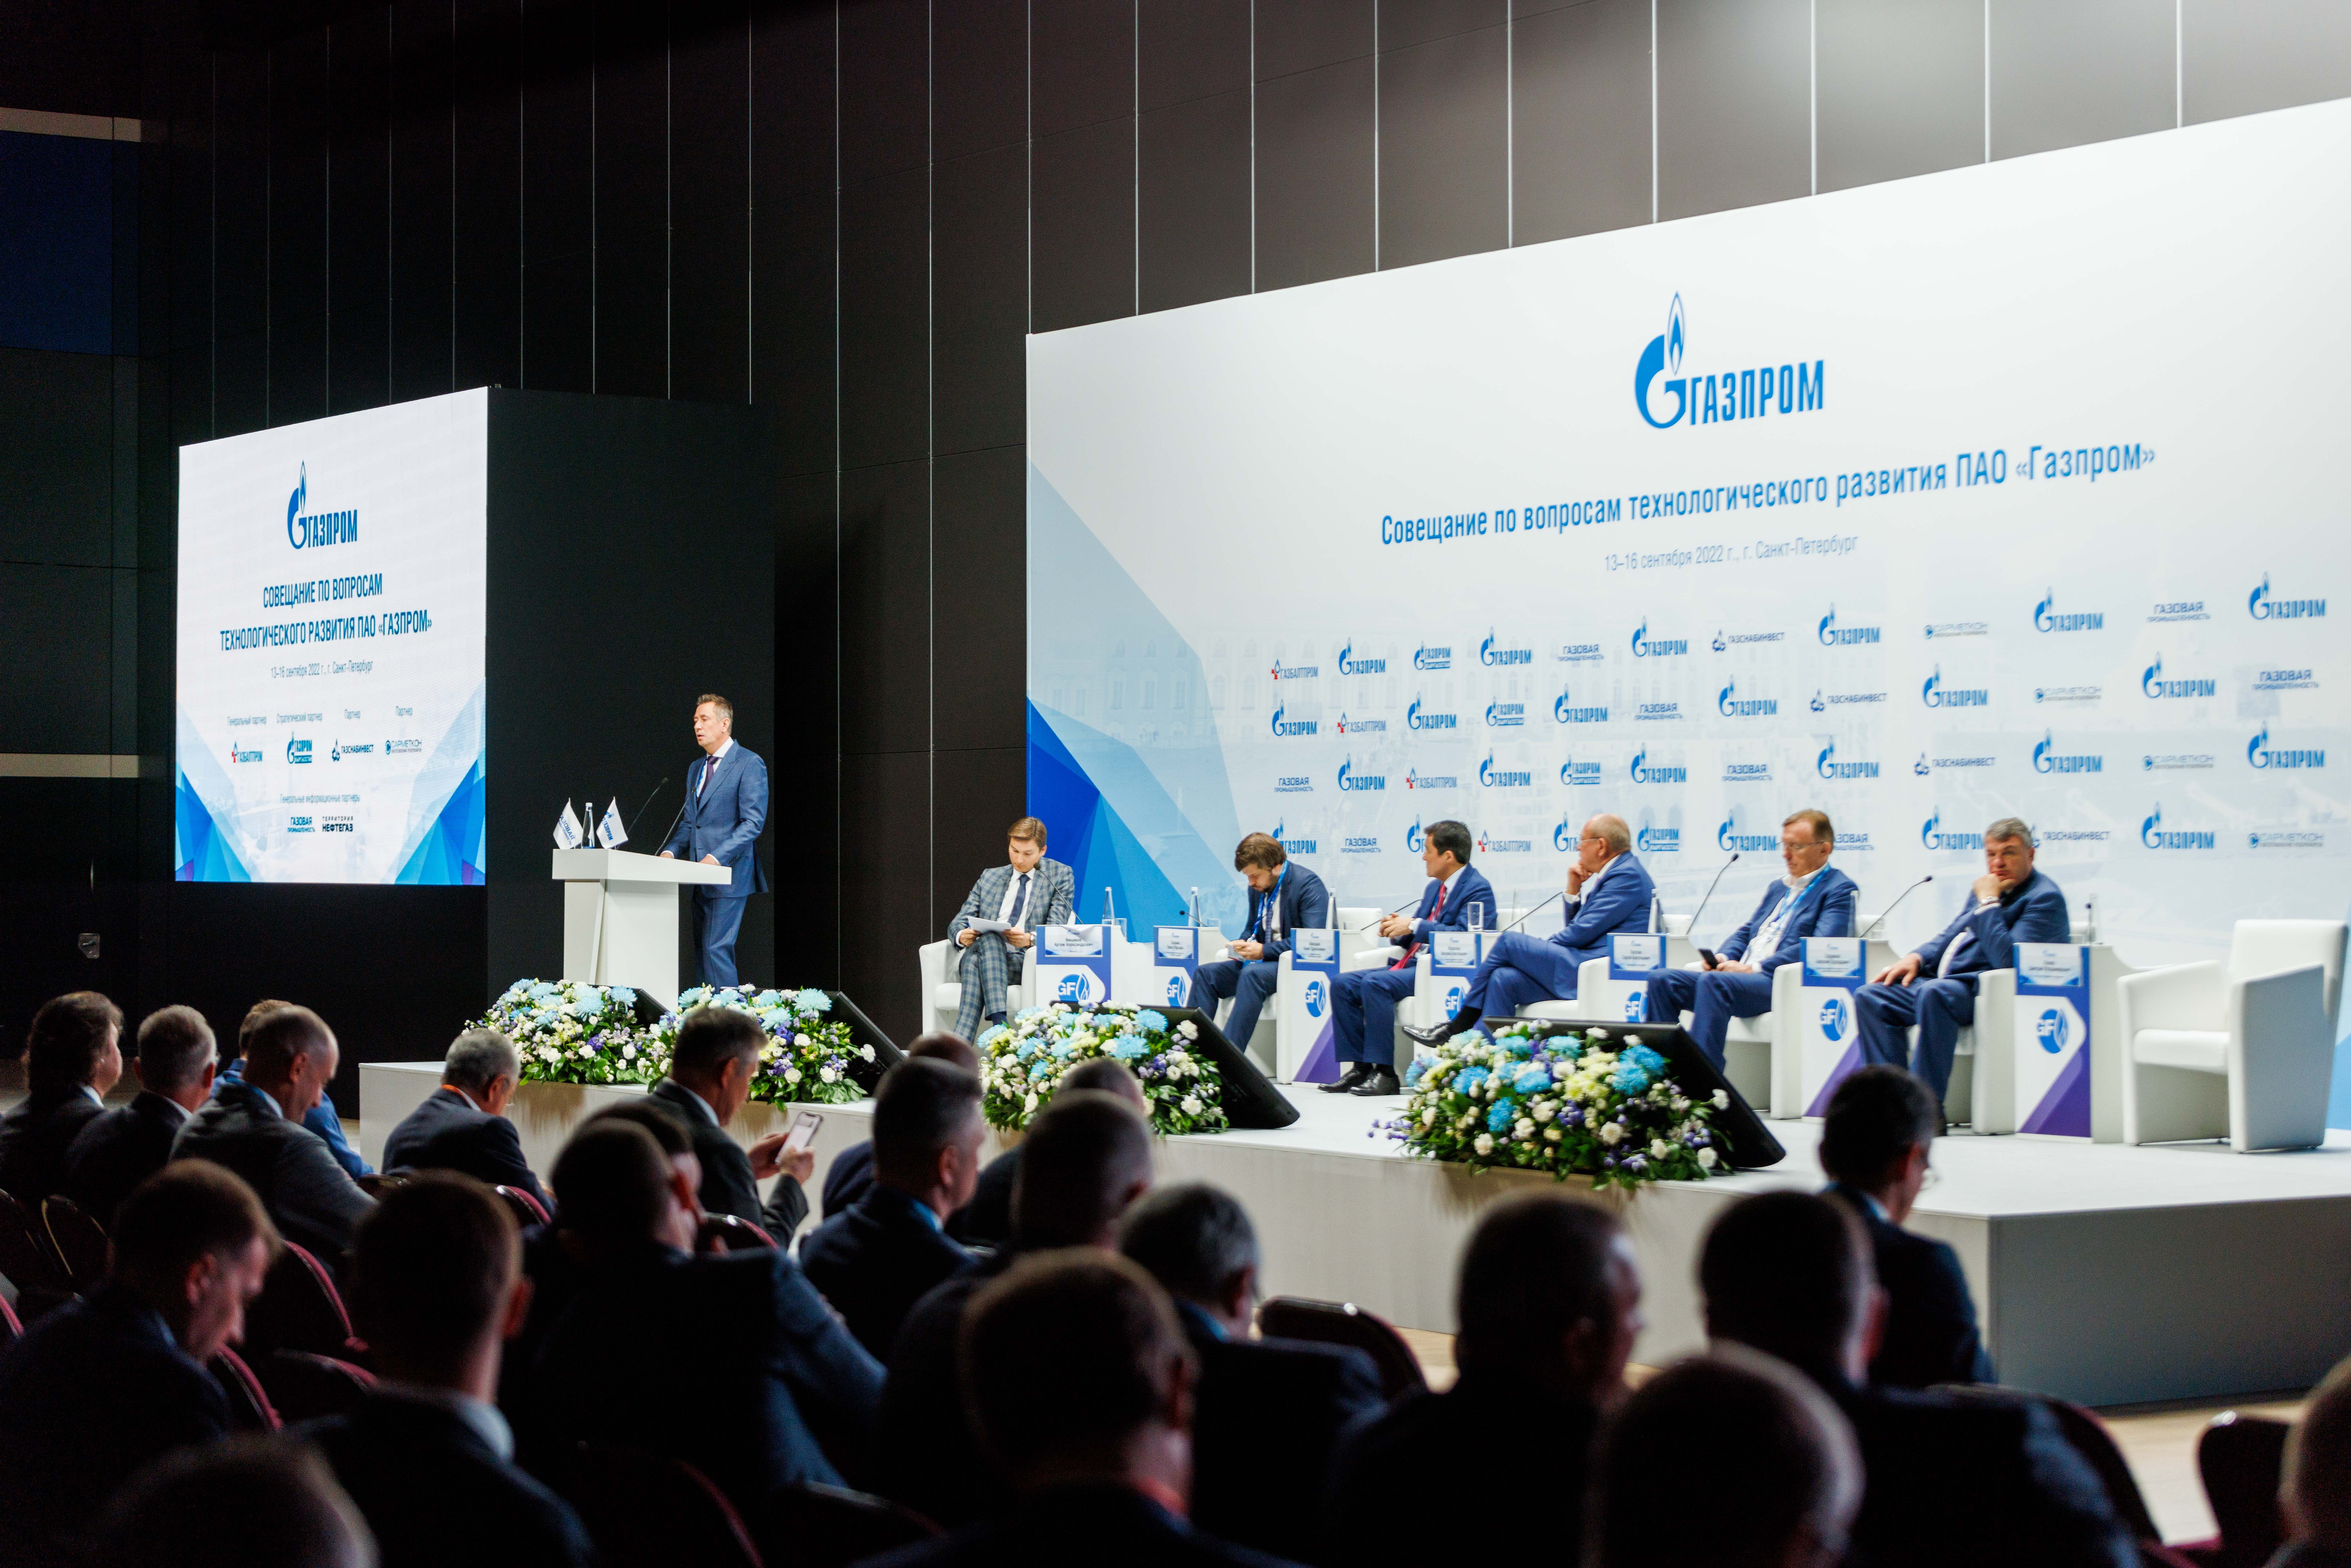 Совещание по вопросам технологического развития ПАО "Газпром"